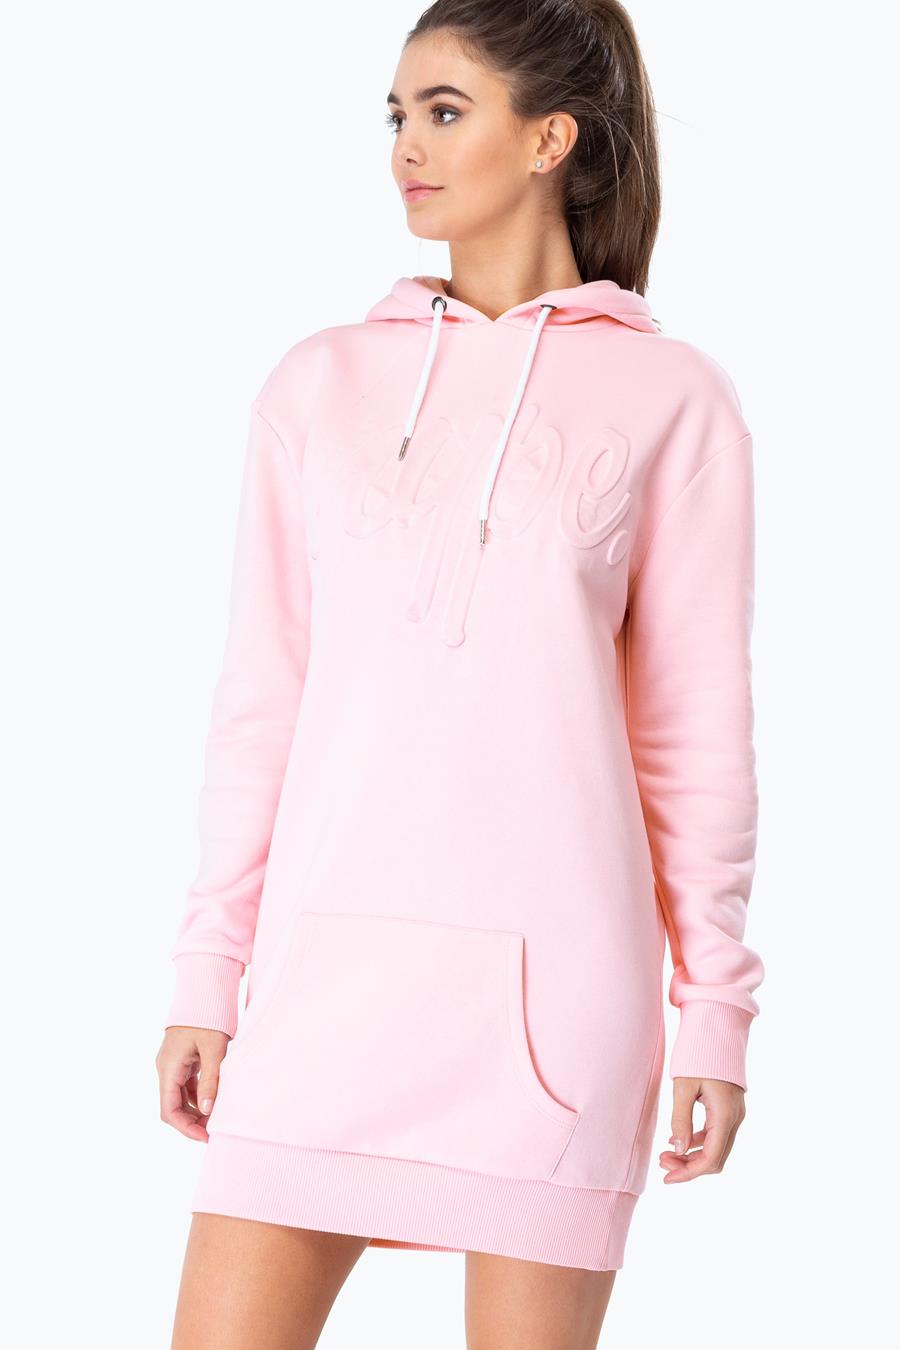 hype pink embossed script womens pullover hoodie dress